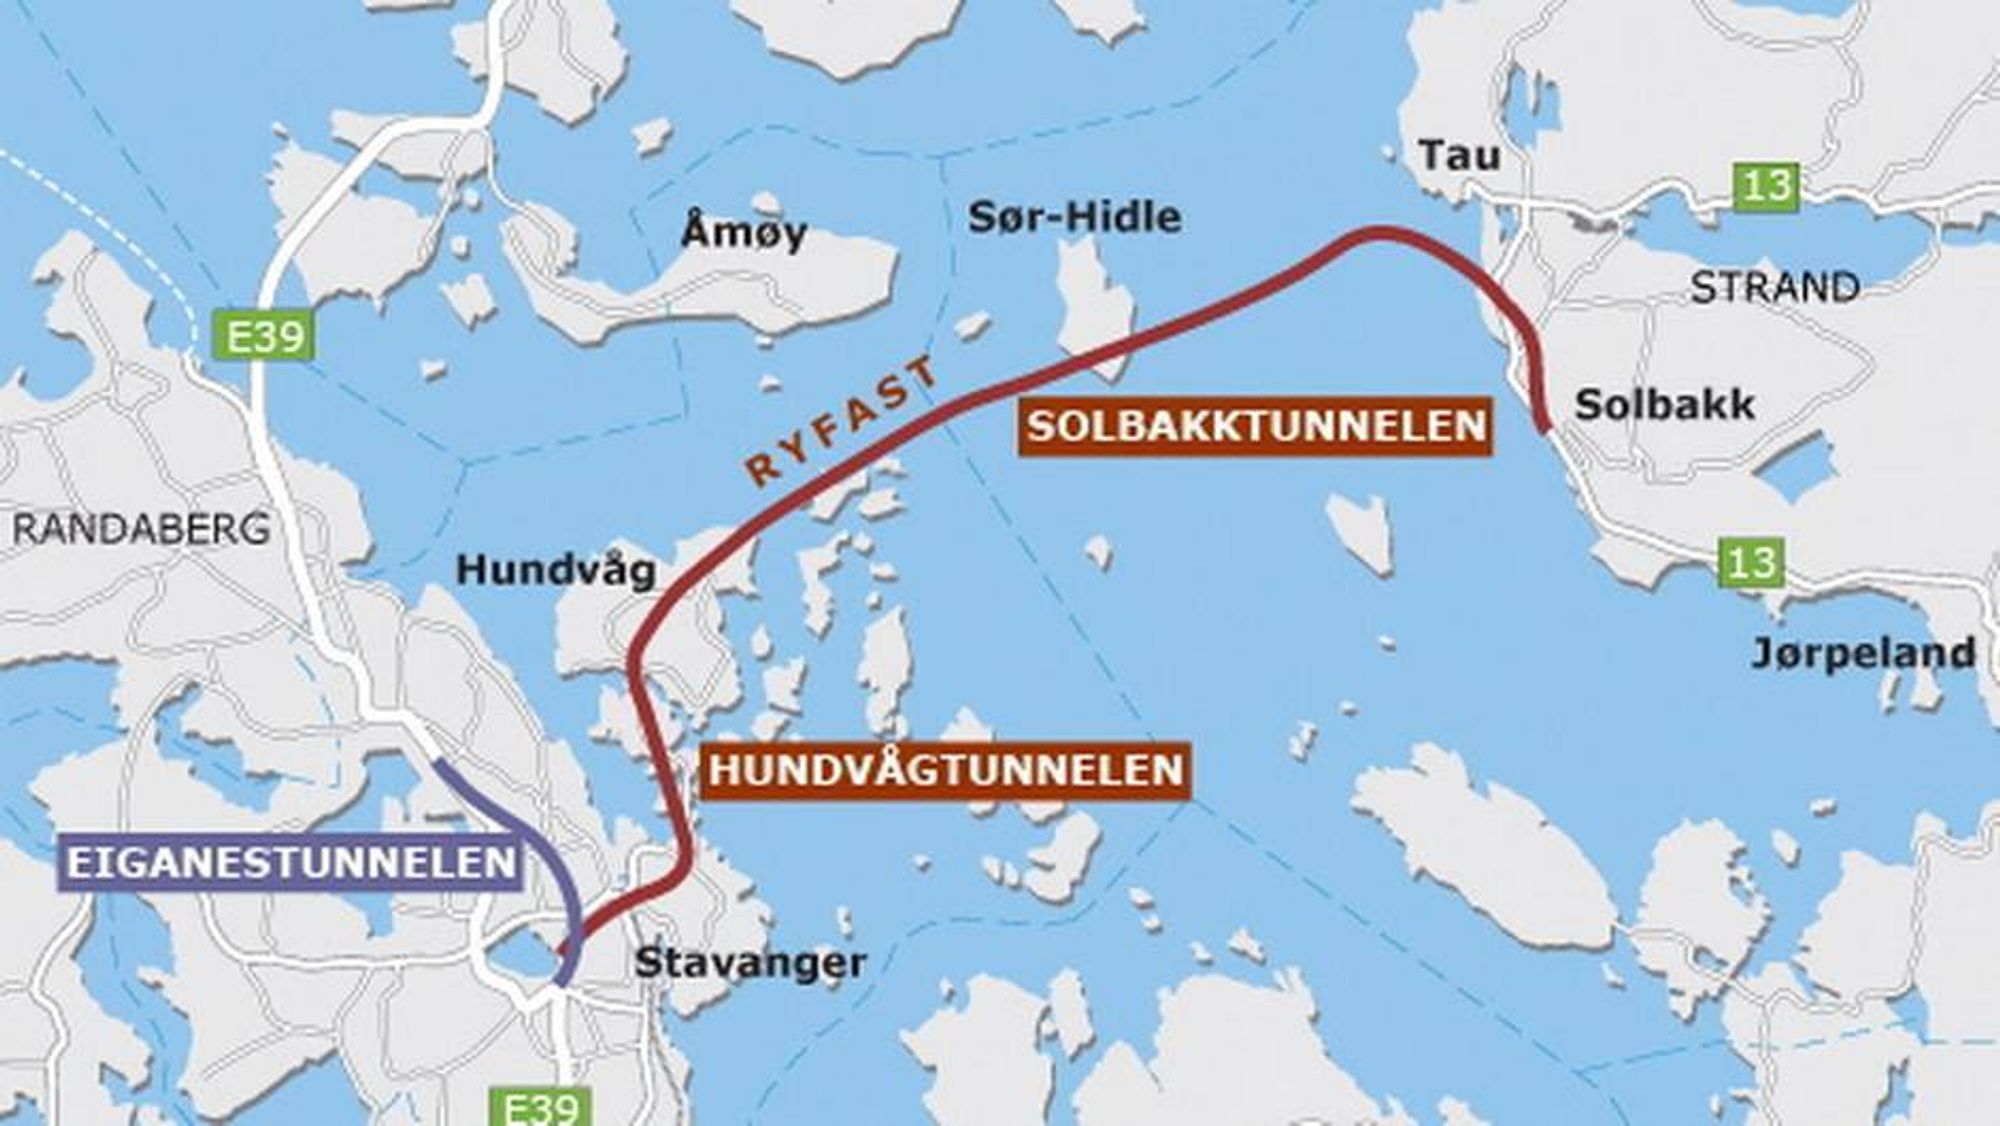 Solbakktunnelen har skiftet navn til Ryfylketunnelen siden denne illustrajsonen ble lagd. Den blir verdens lengste undersjøiske vegtunnel når den åpnes i 2019. (Ill.: Statens vegvesen).